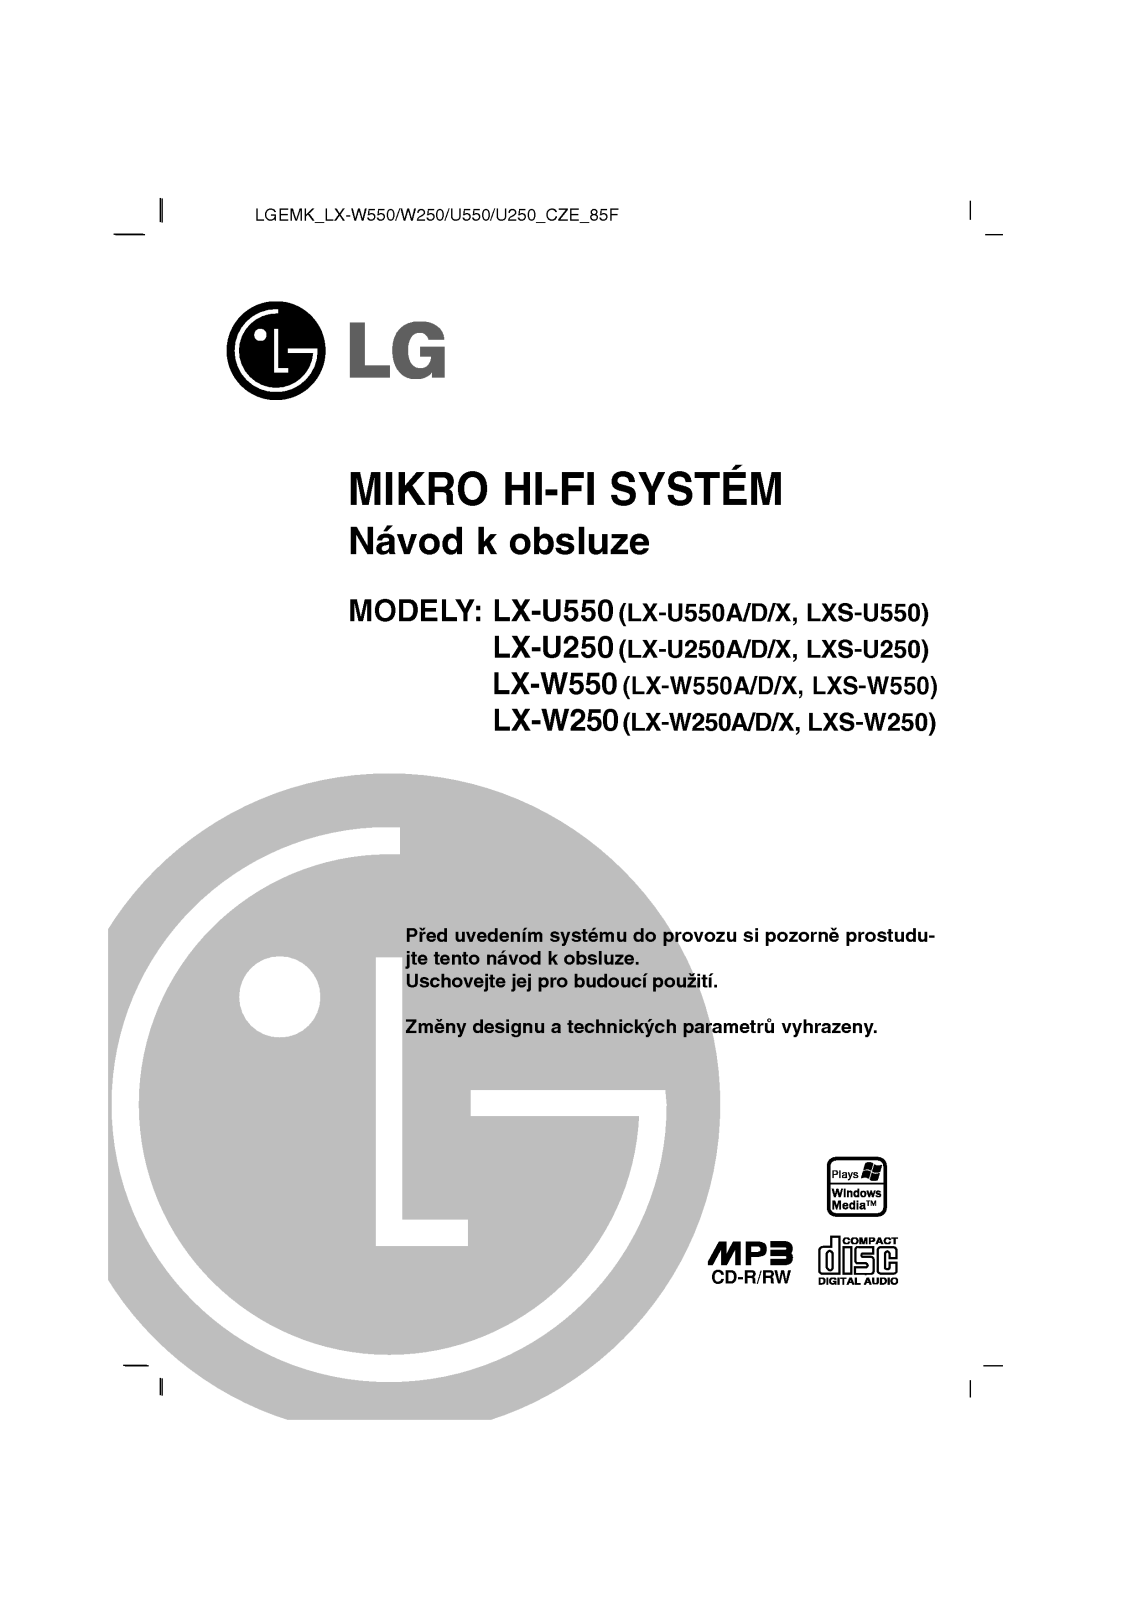 Lg LX-U250, LX-U550, LX-W250, LX-W550 user Manual